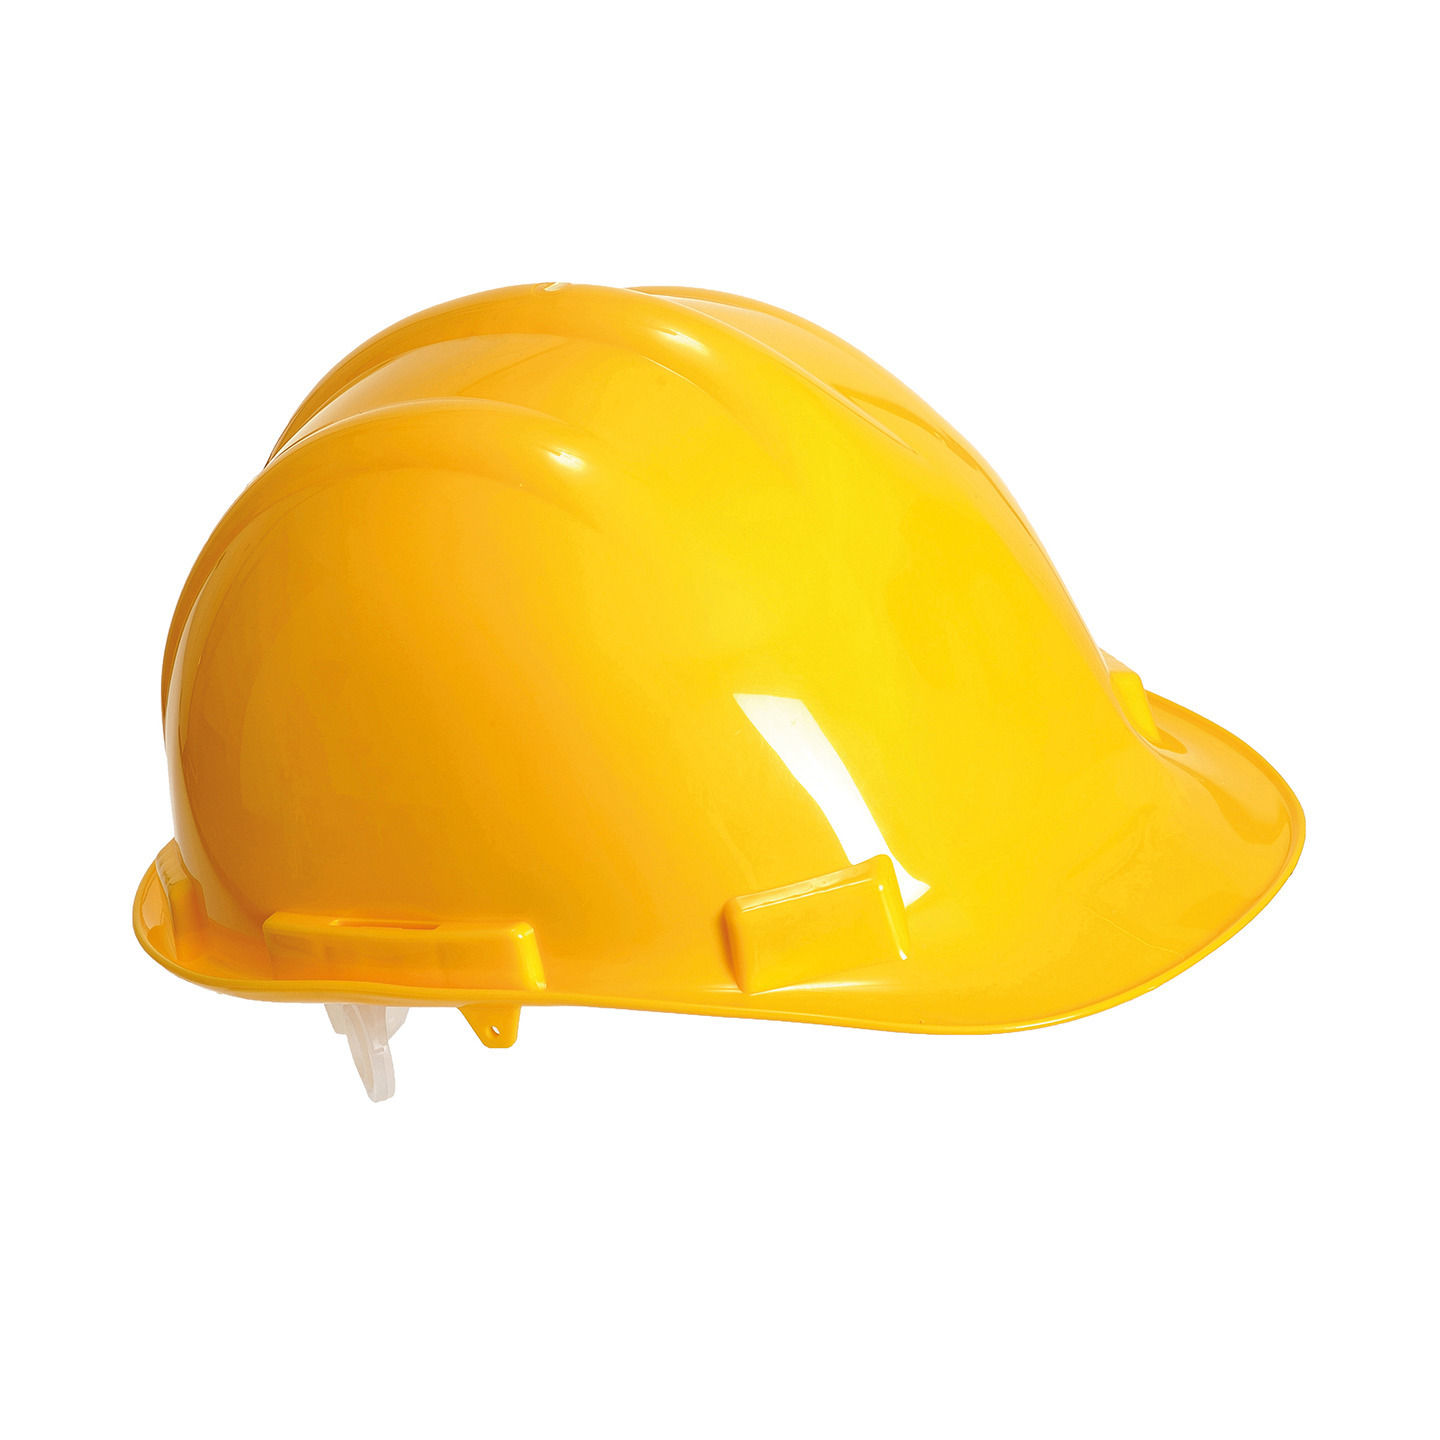 Set van 3x stuks veiligheidshelmen-bouwhelmen hoofdbescherming geel verstelbaar 55-62 cm